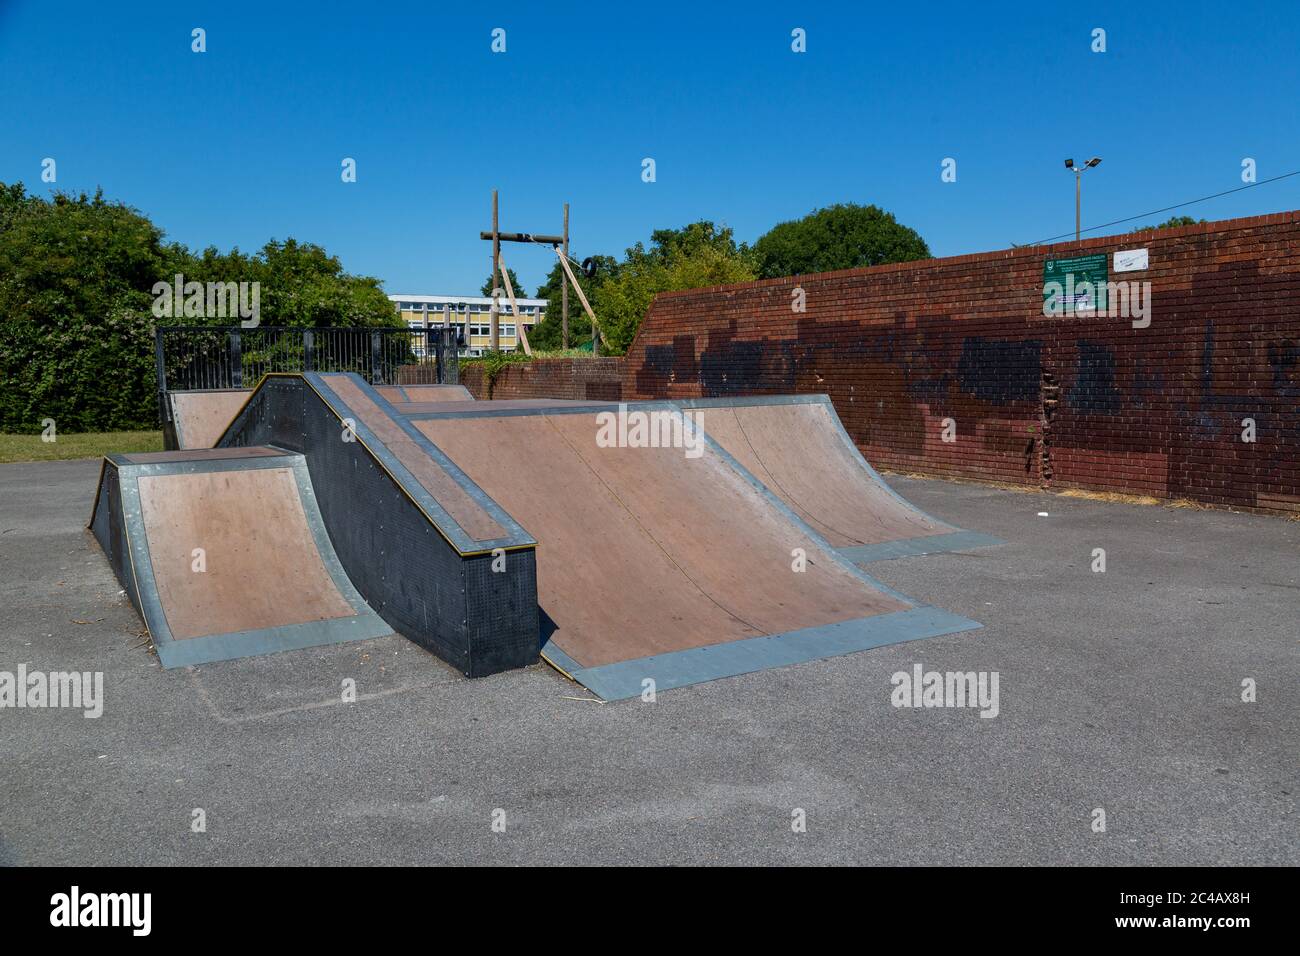 Skaterampen in einem lokalen Park für Skateboarding ohne Menschen, die sie verwenden Stockfoto